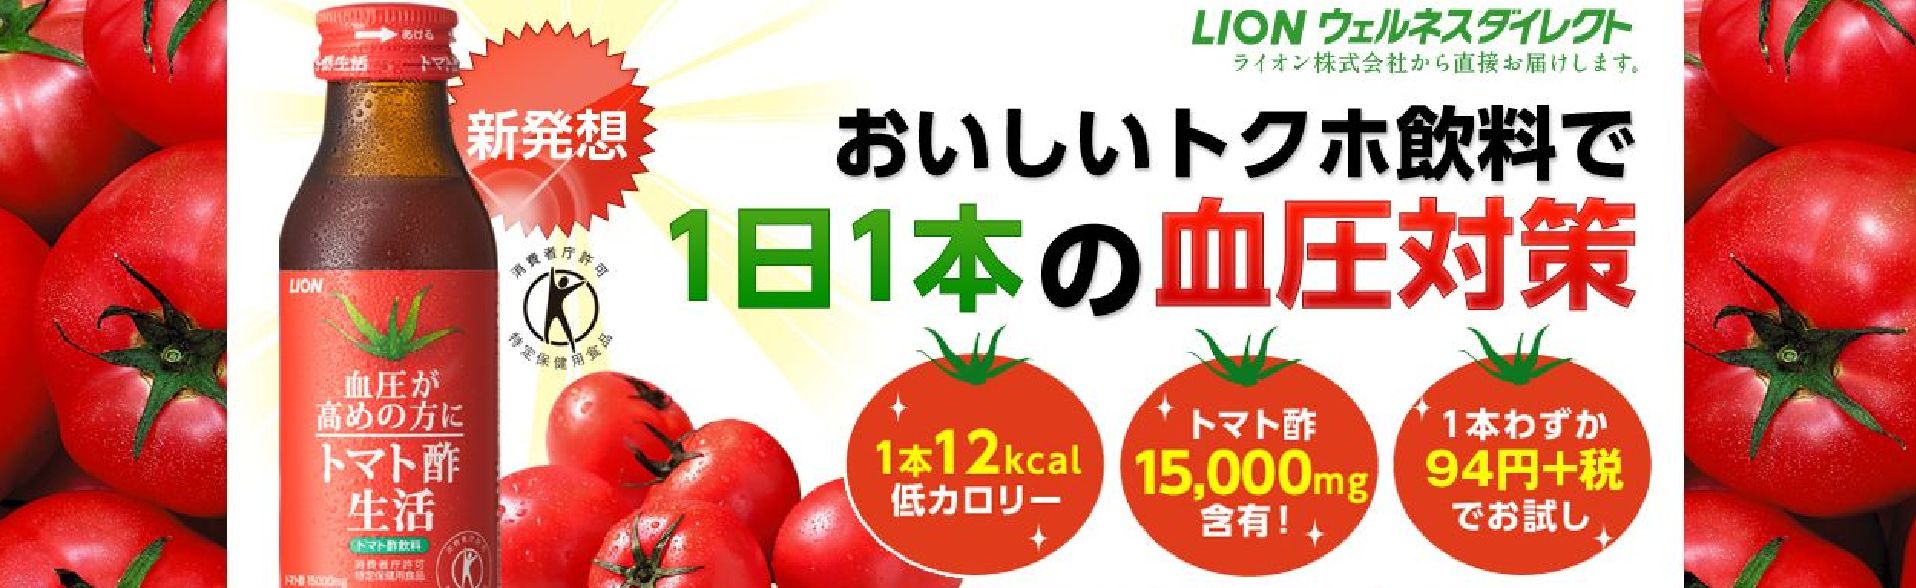 トマト酢生活 トライアルセット販売